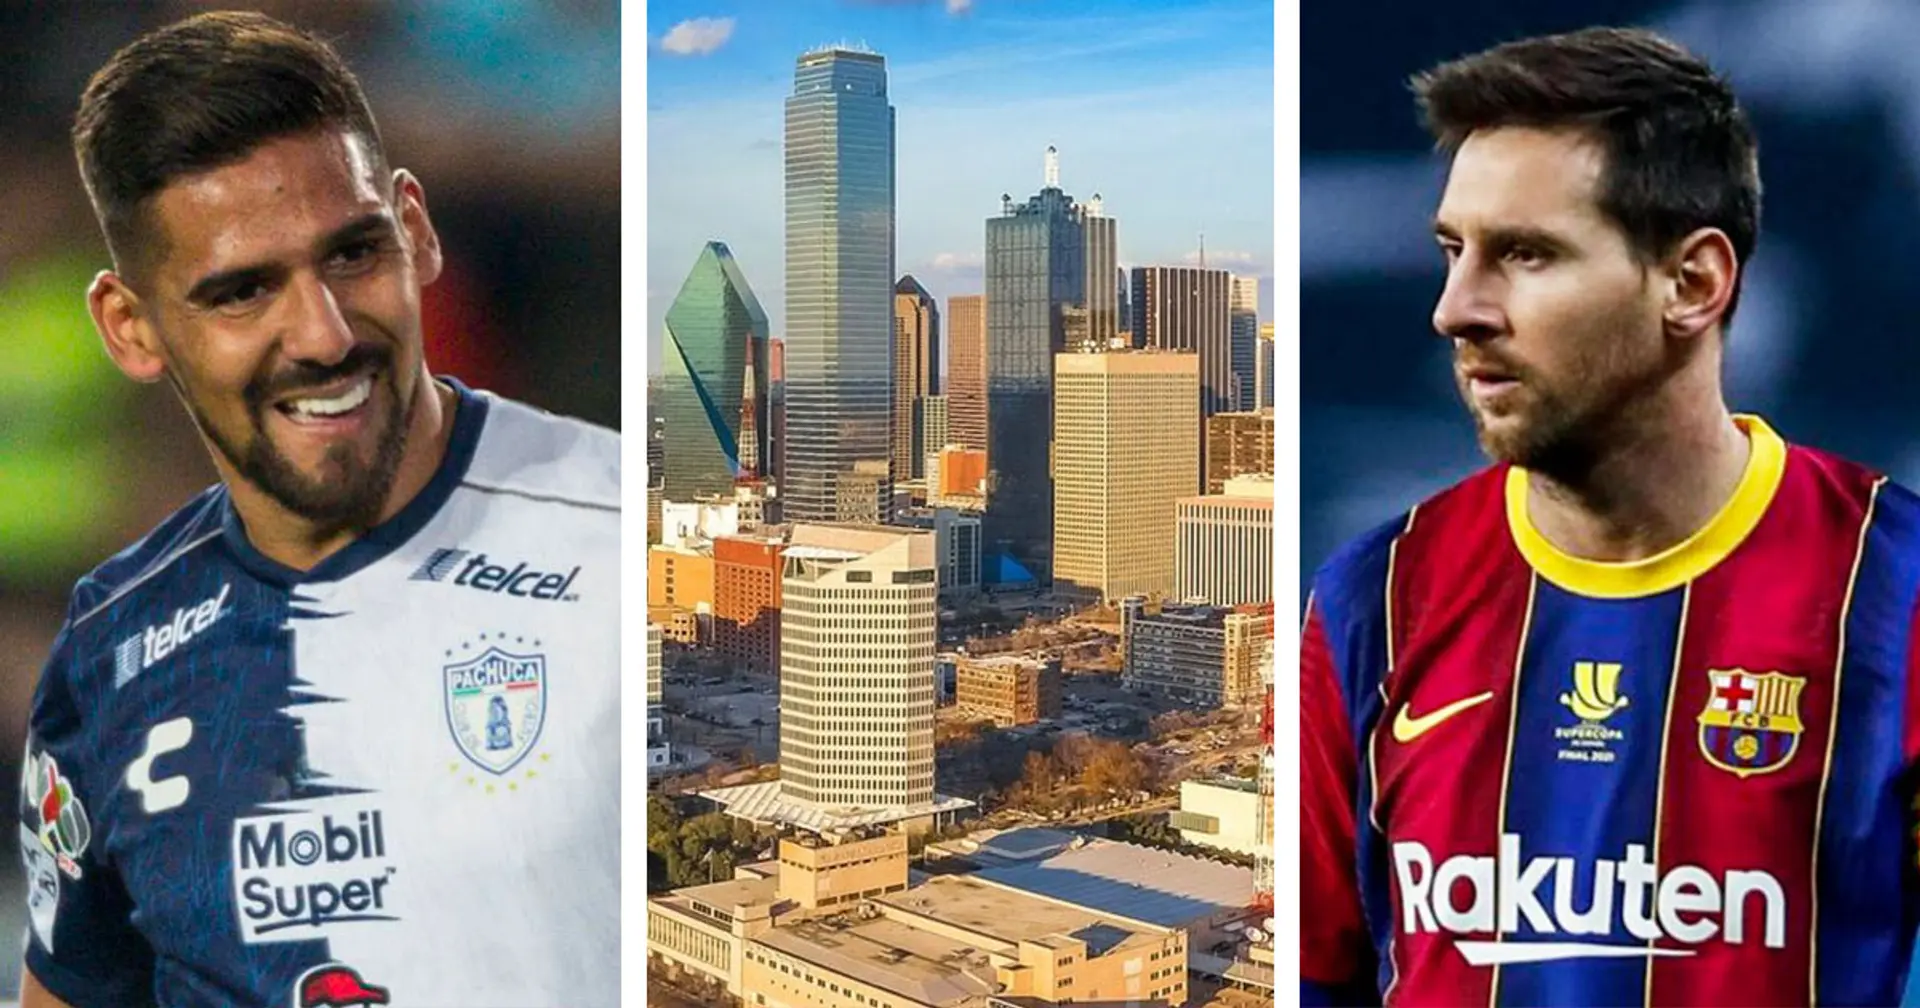 'If Messi came to MLS, I would kiss his feet': Dallas forward Franco Jara